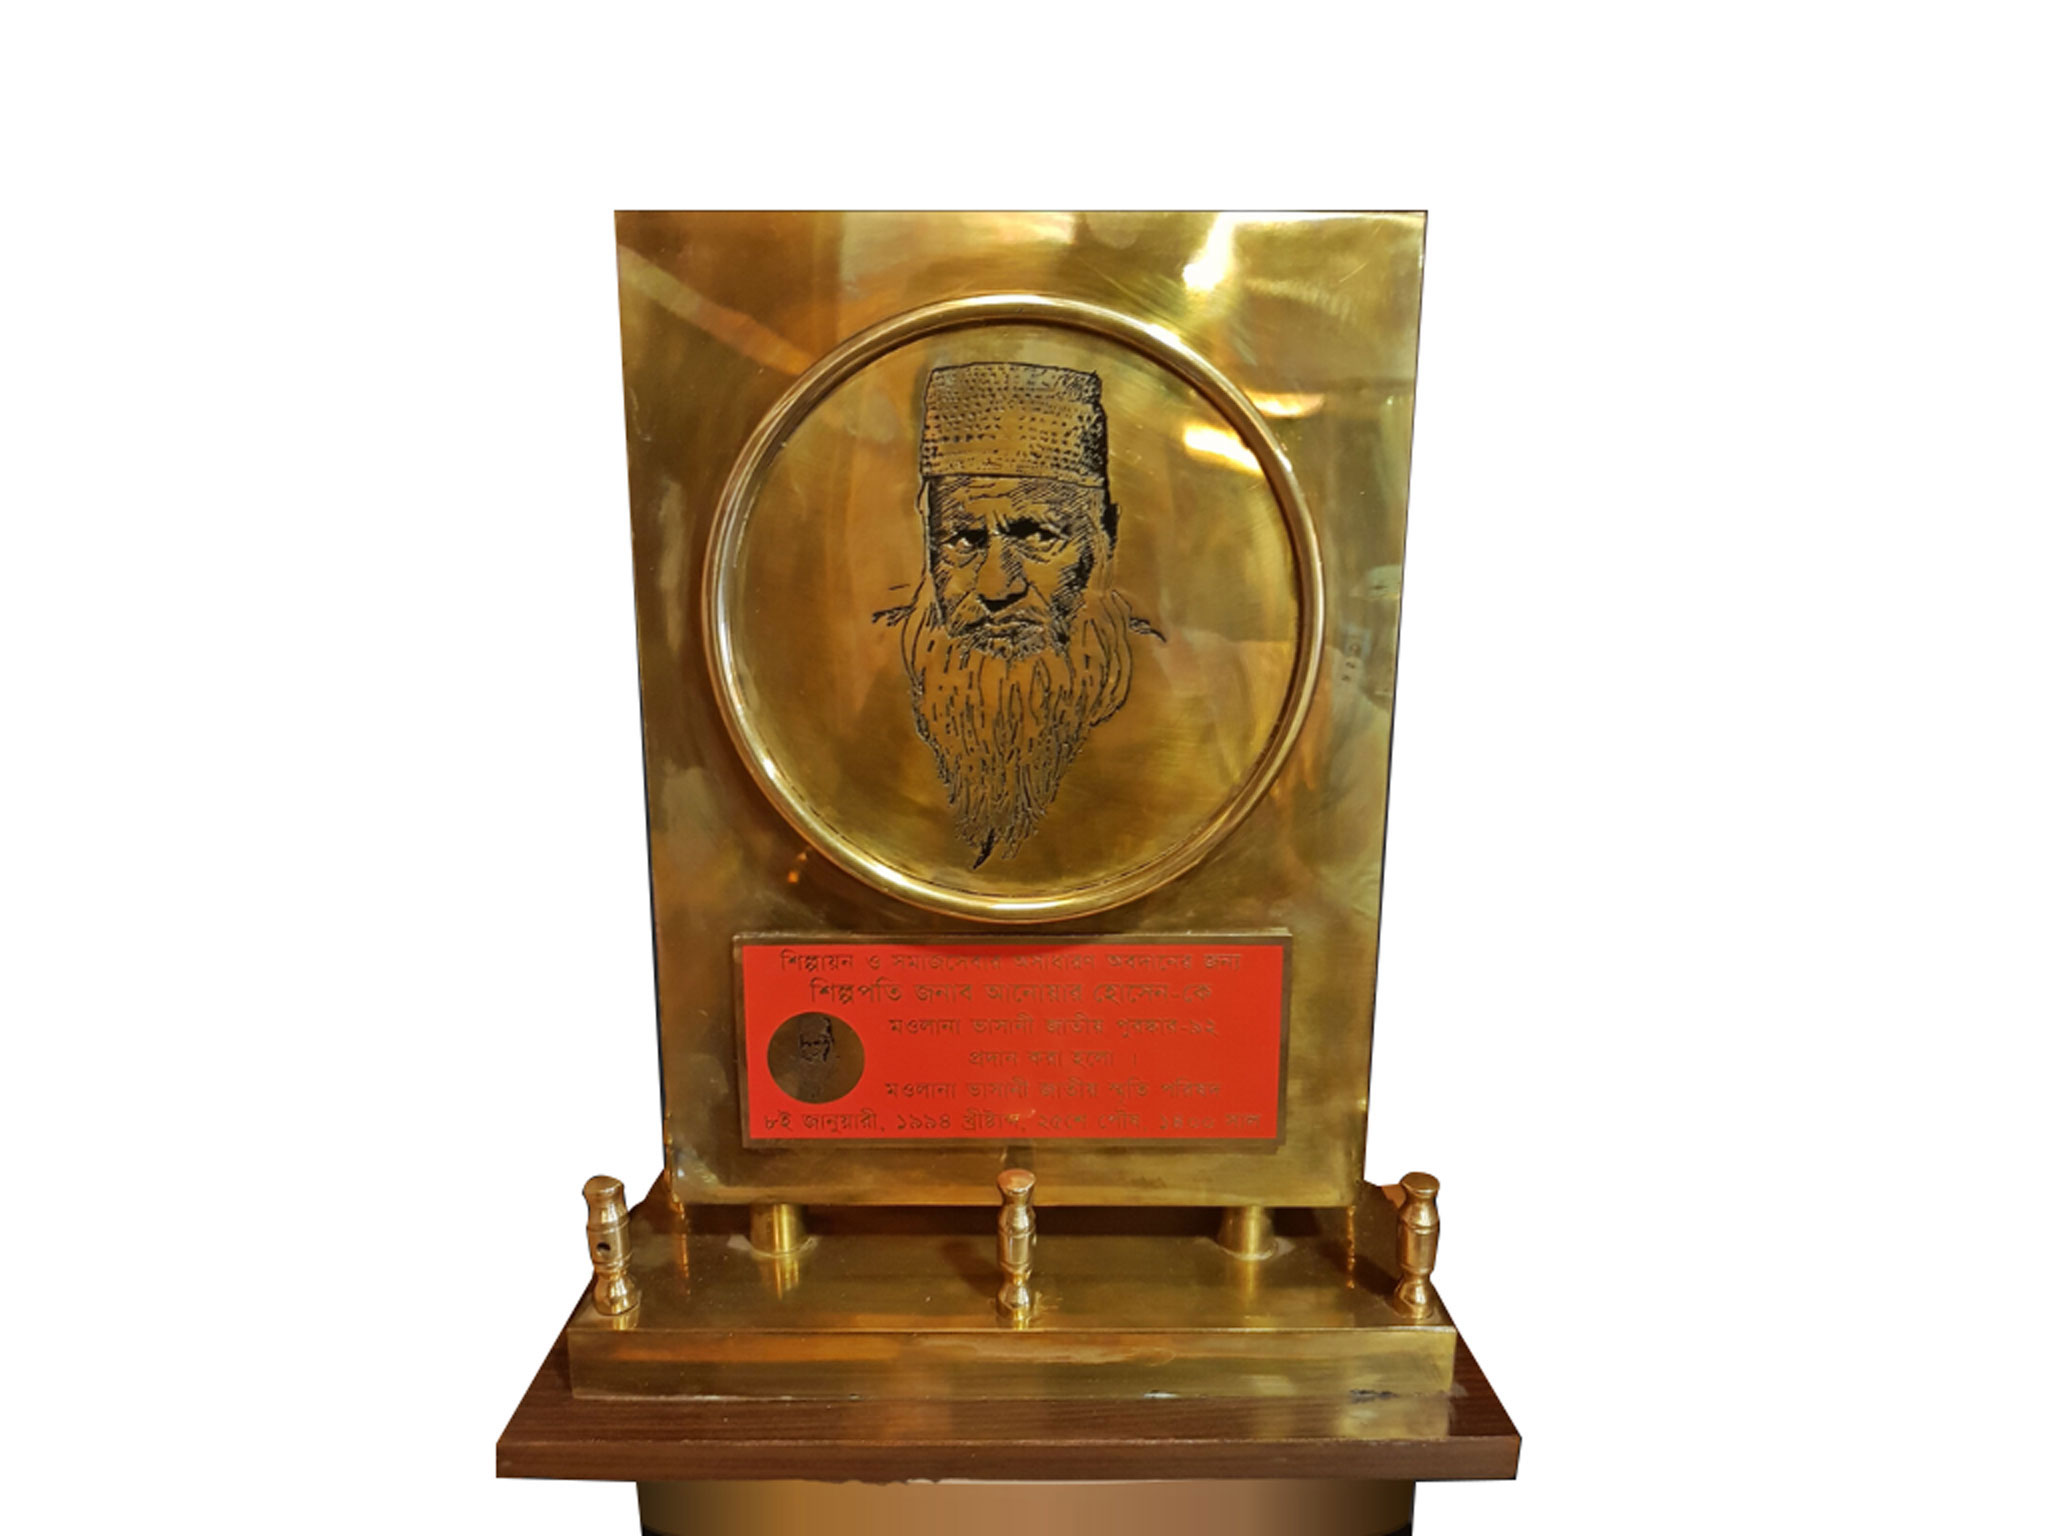 Mawlana-Bhashani-National-Award